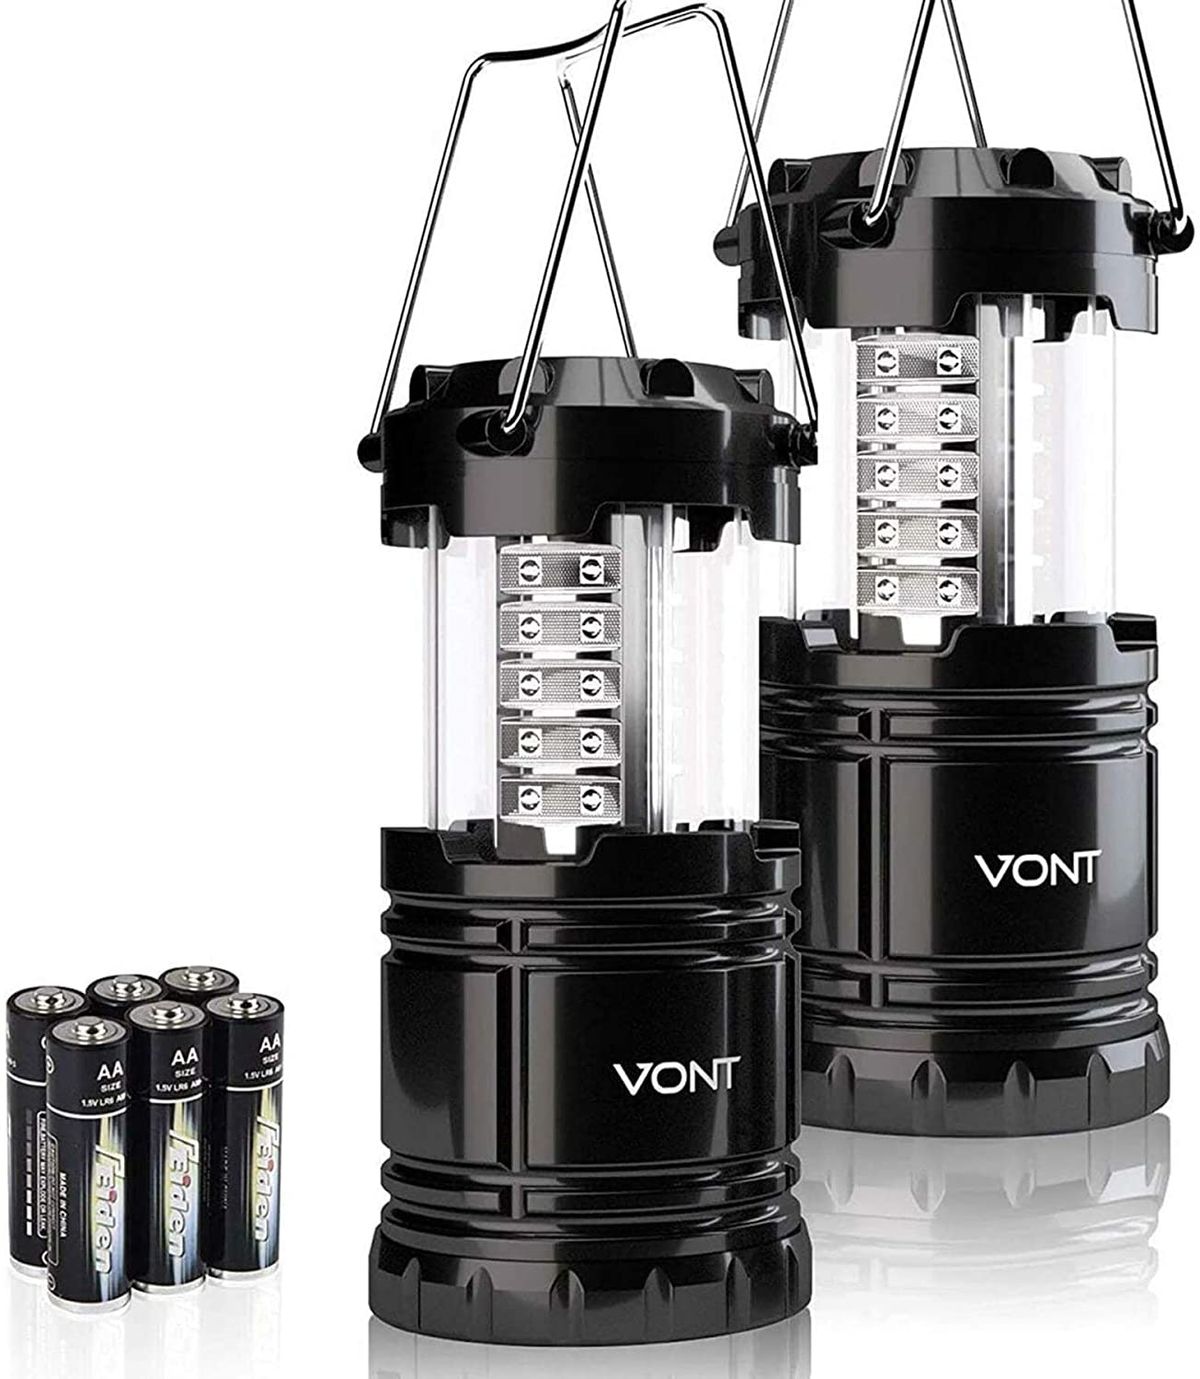 Les 7 meilleures lanternes LED pour le camping, la randonnée et au-delà